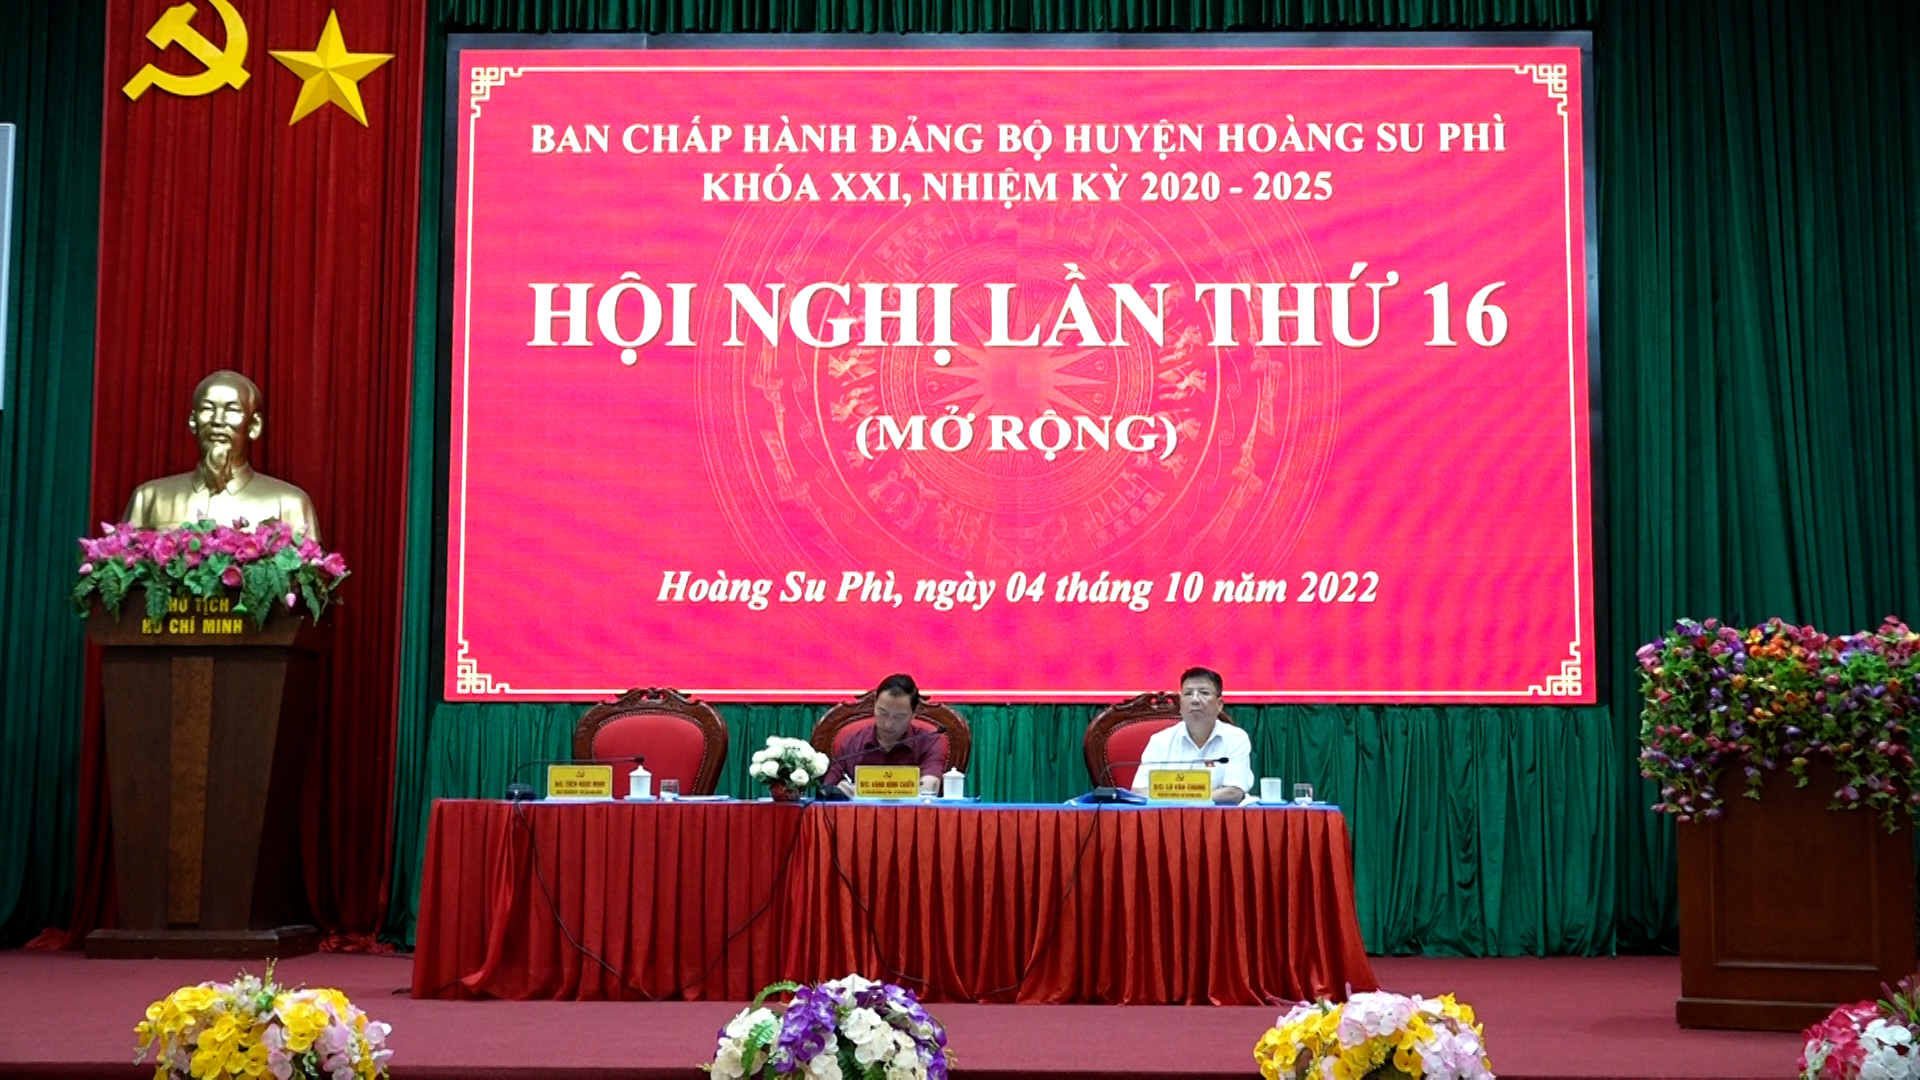 Hoàng Su Phì tổ chức Hội nghị BCH lần thứ 16 (mở rộng)